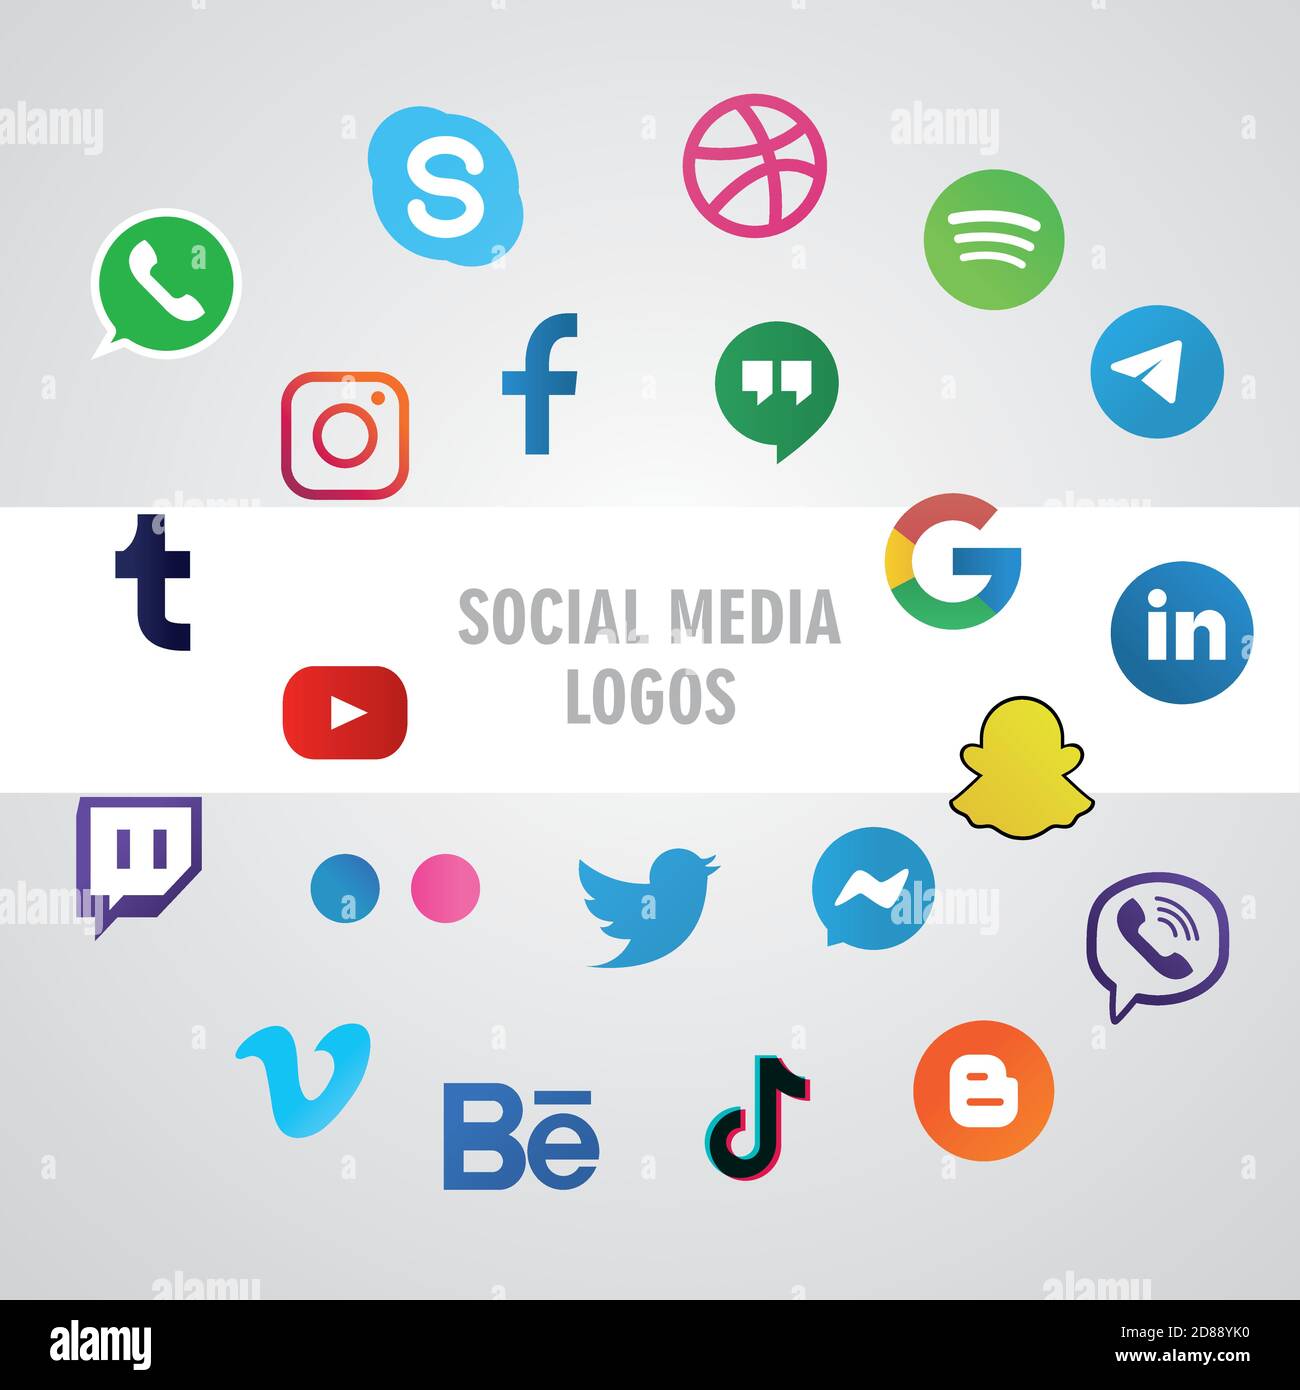 icônes pour les logos de médias sociaux, l'illustration vectorielle la plus populaire et la plus utilisée Illustration de Vecteur